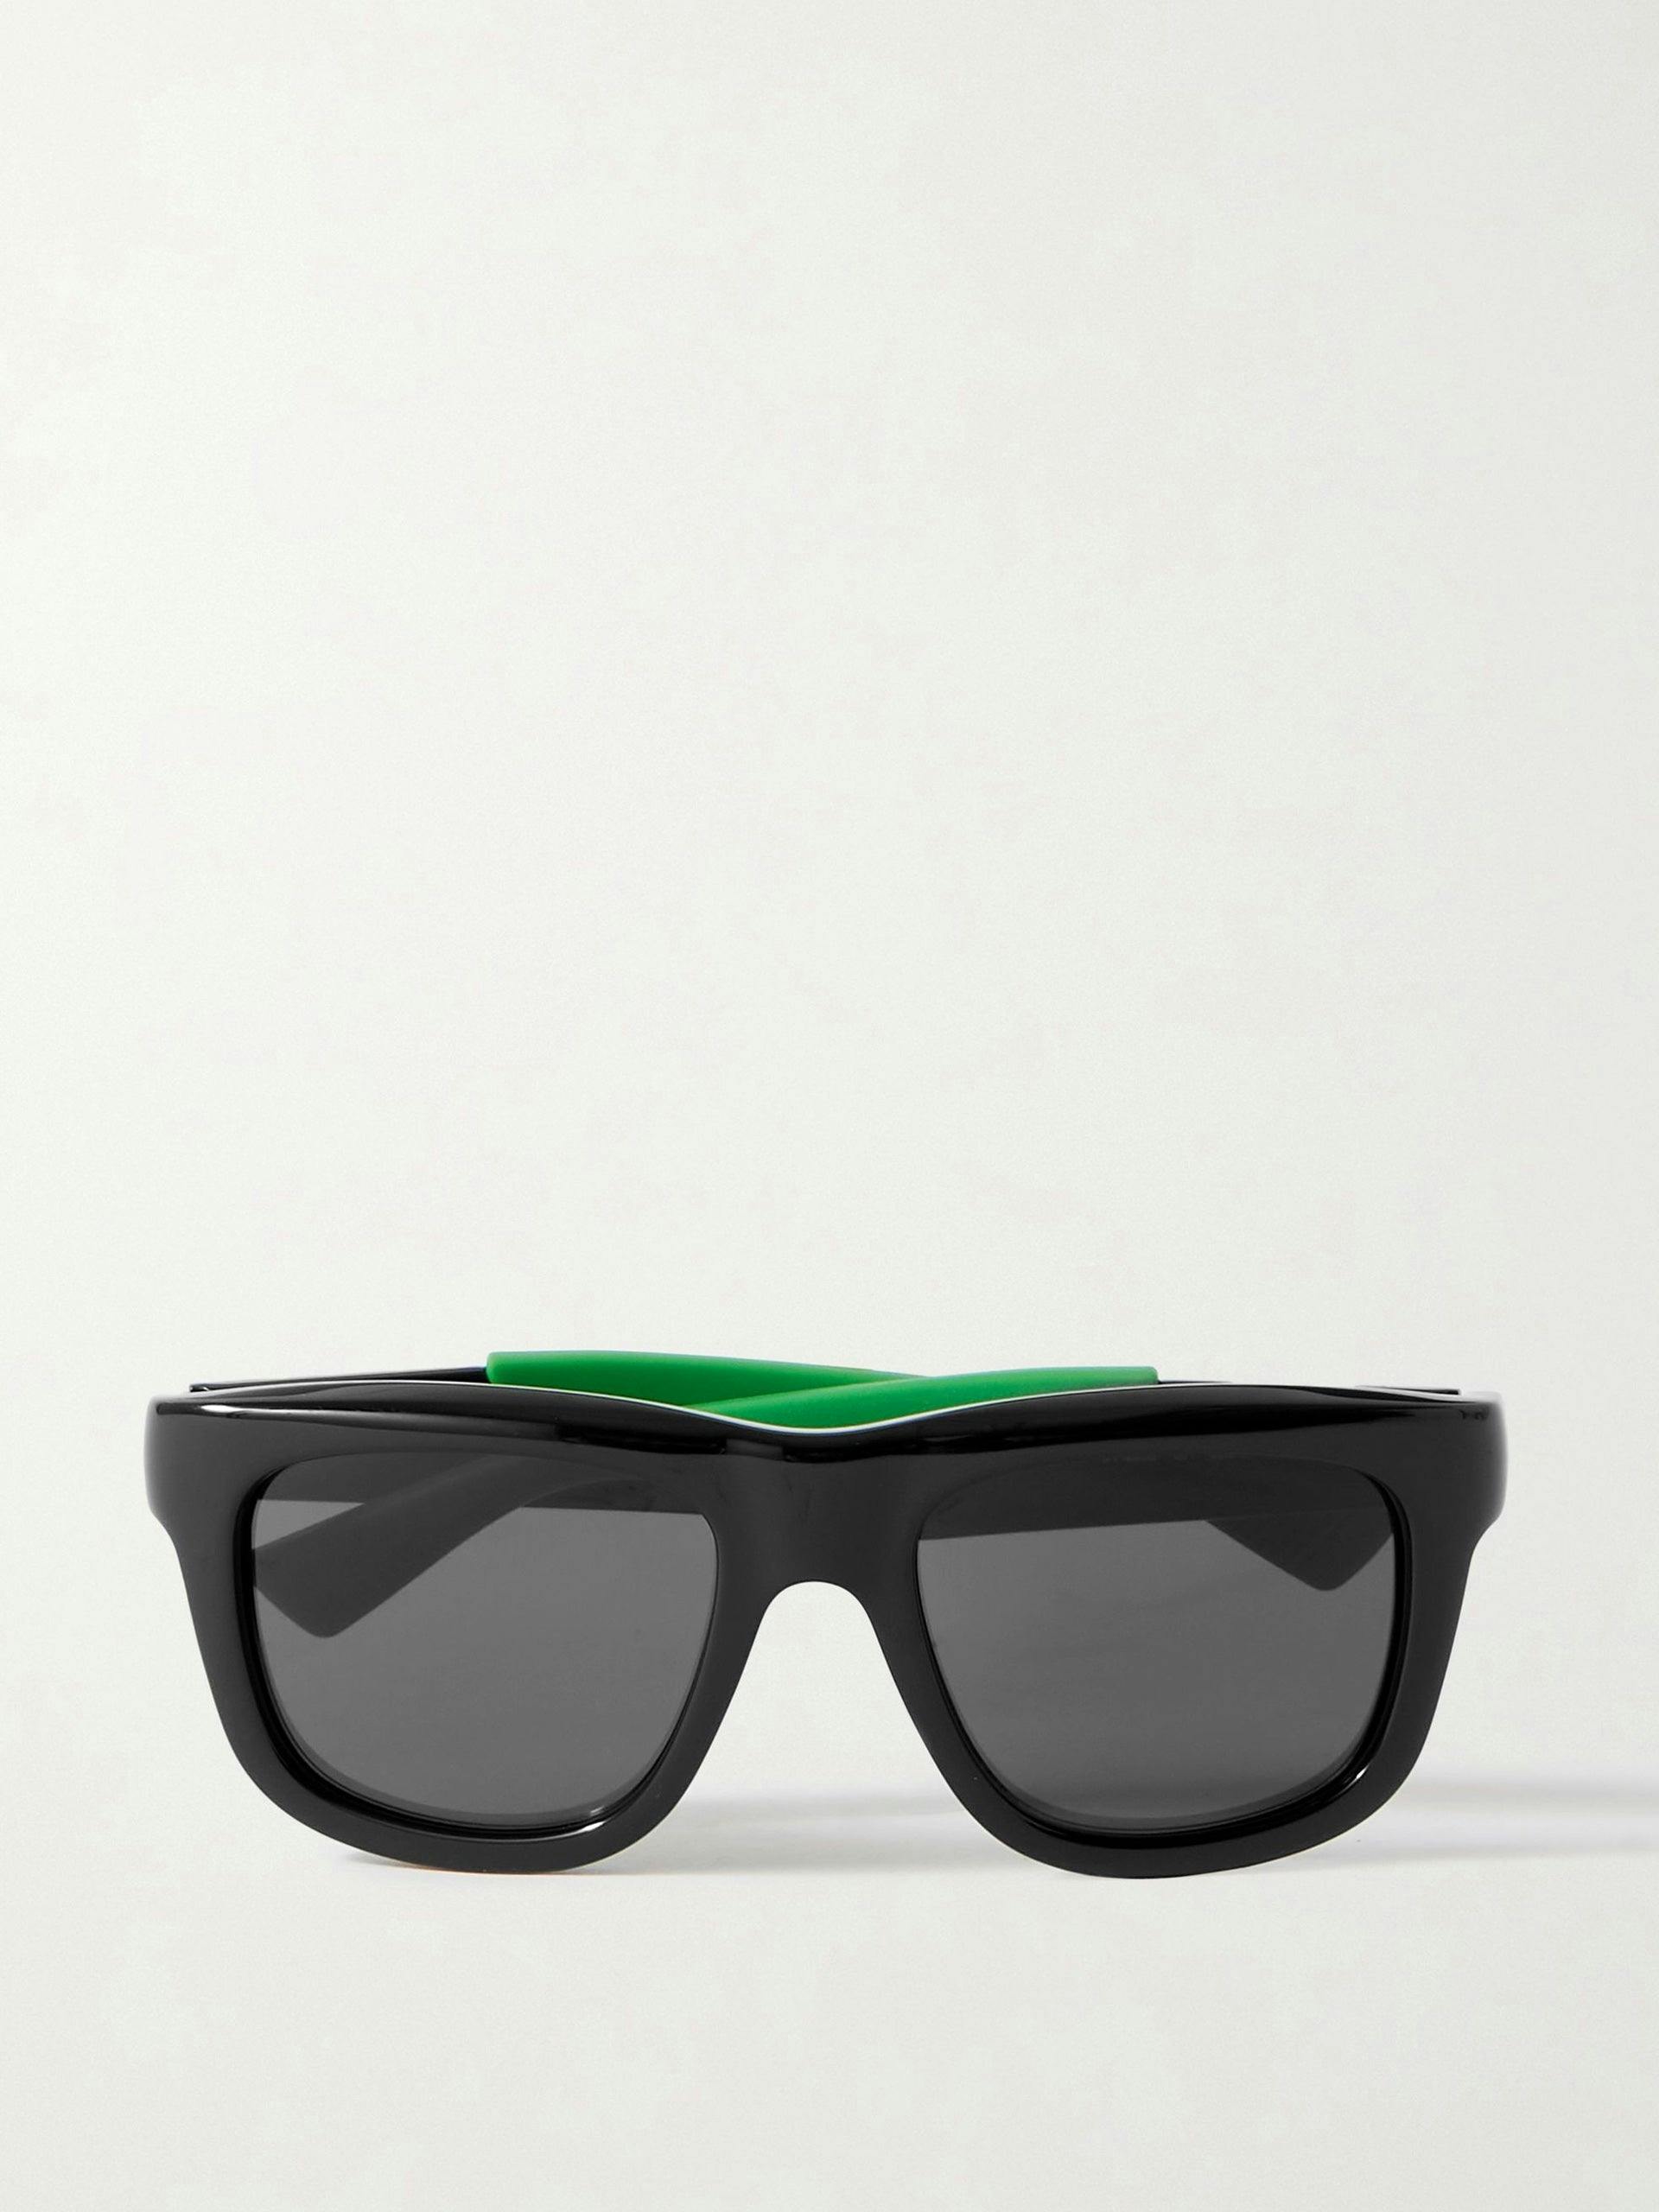 Black acetate sunglasses